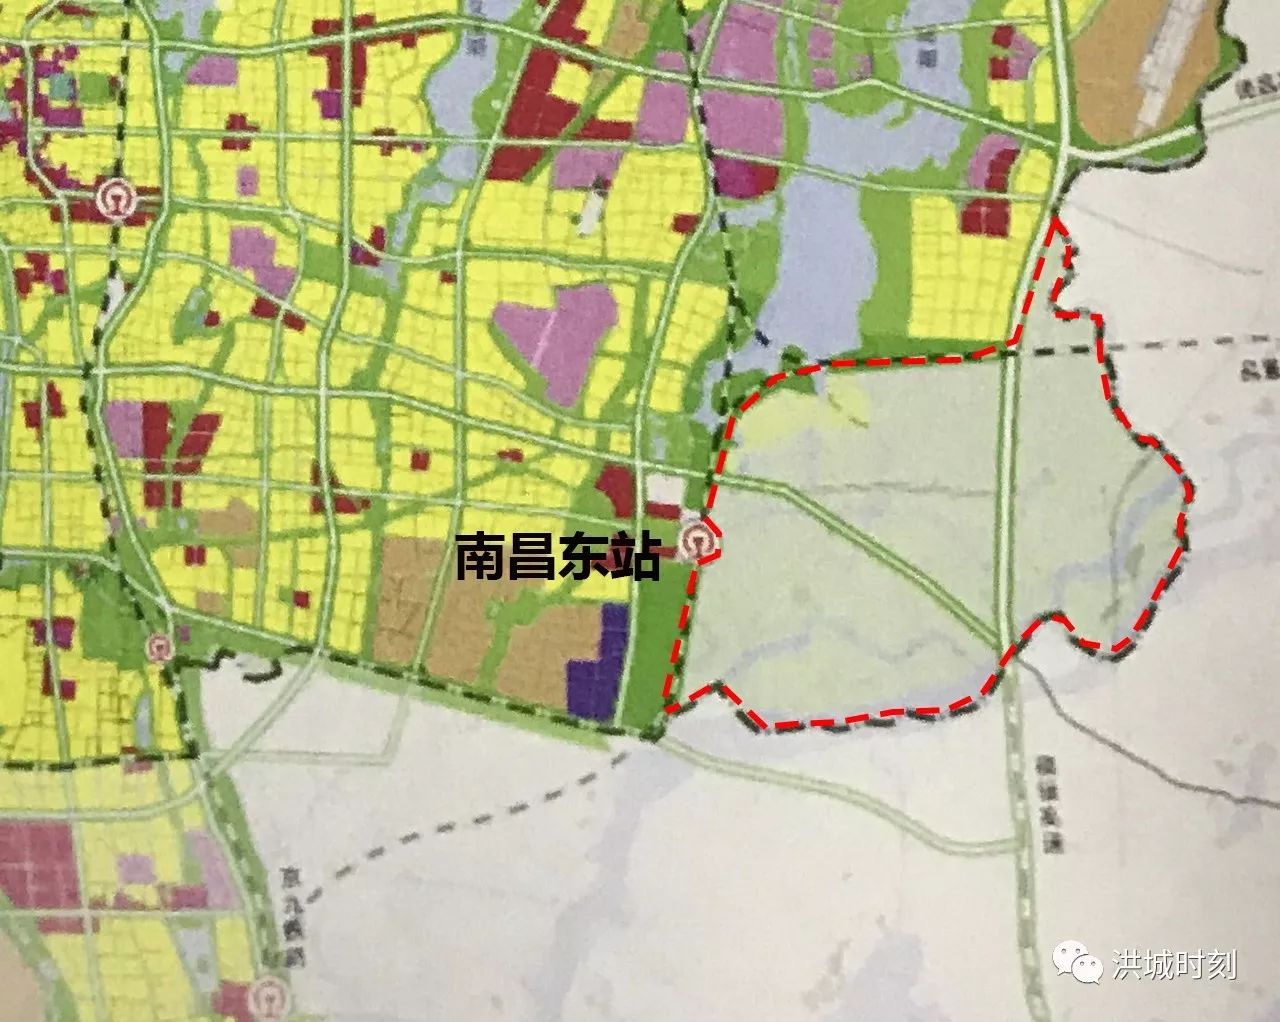 而随着南昌东站的用地规模确定以及《南昌市城市总体规划(2016